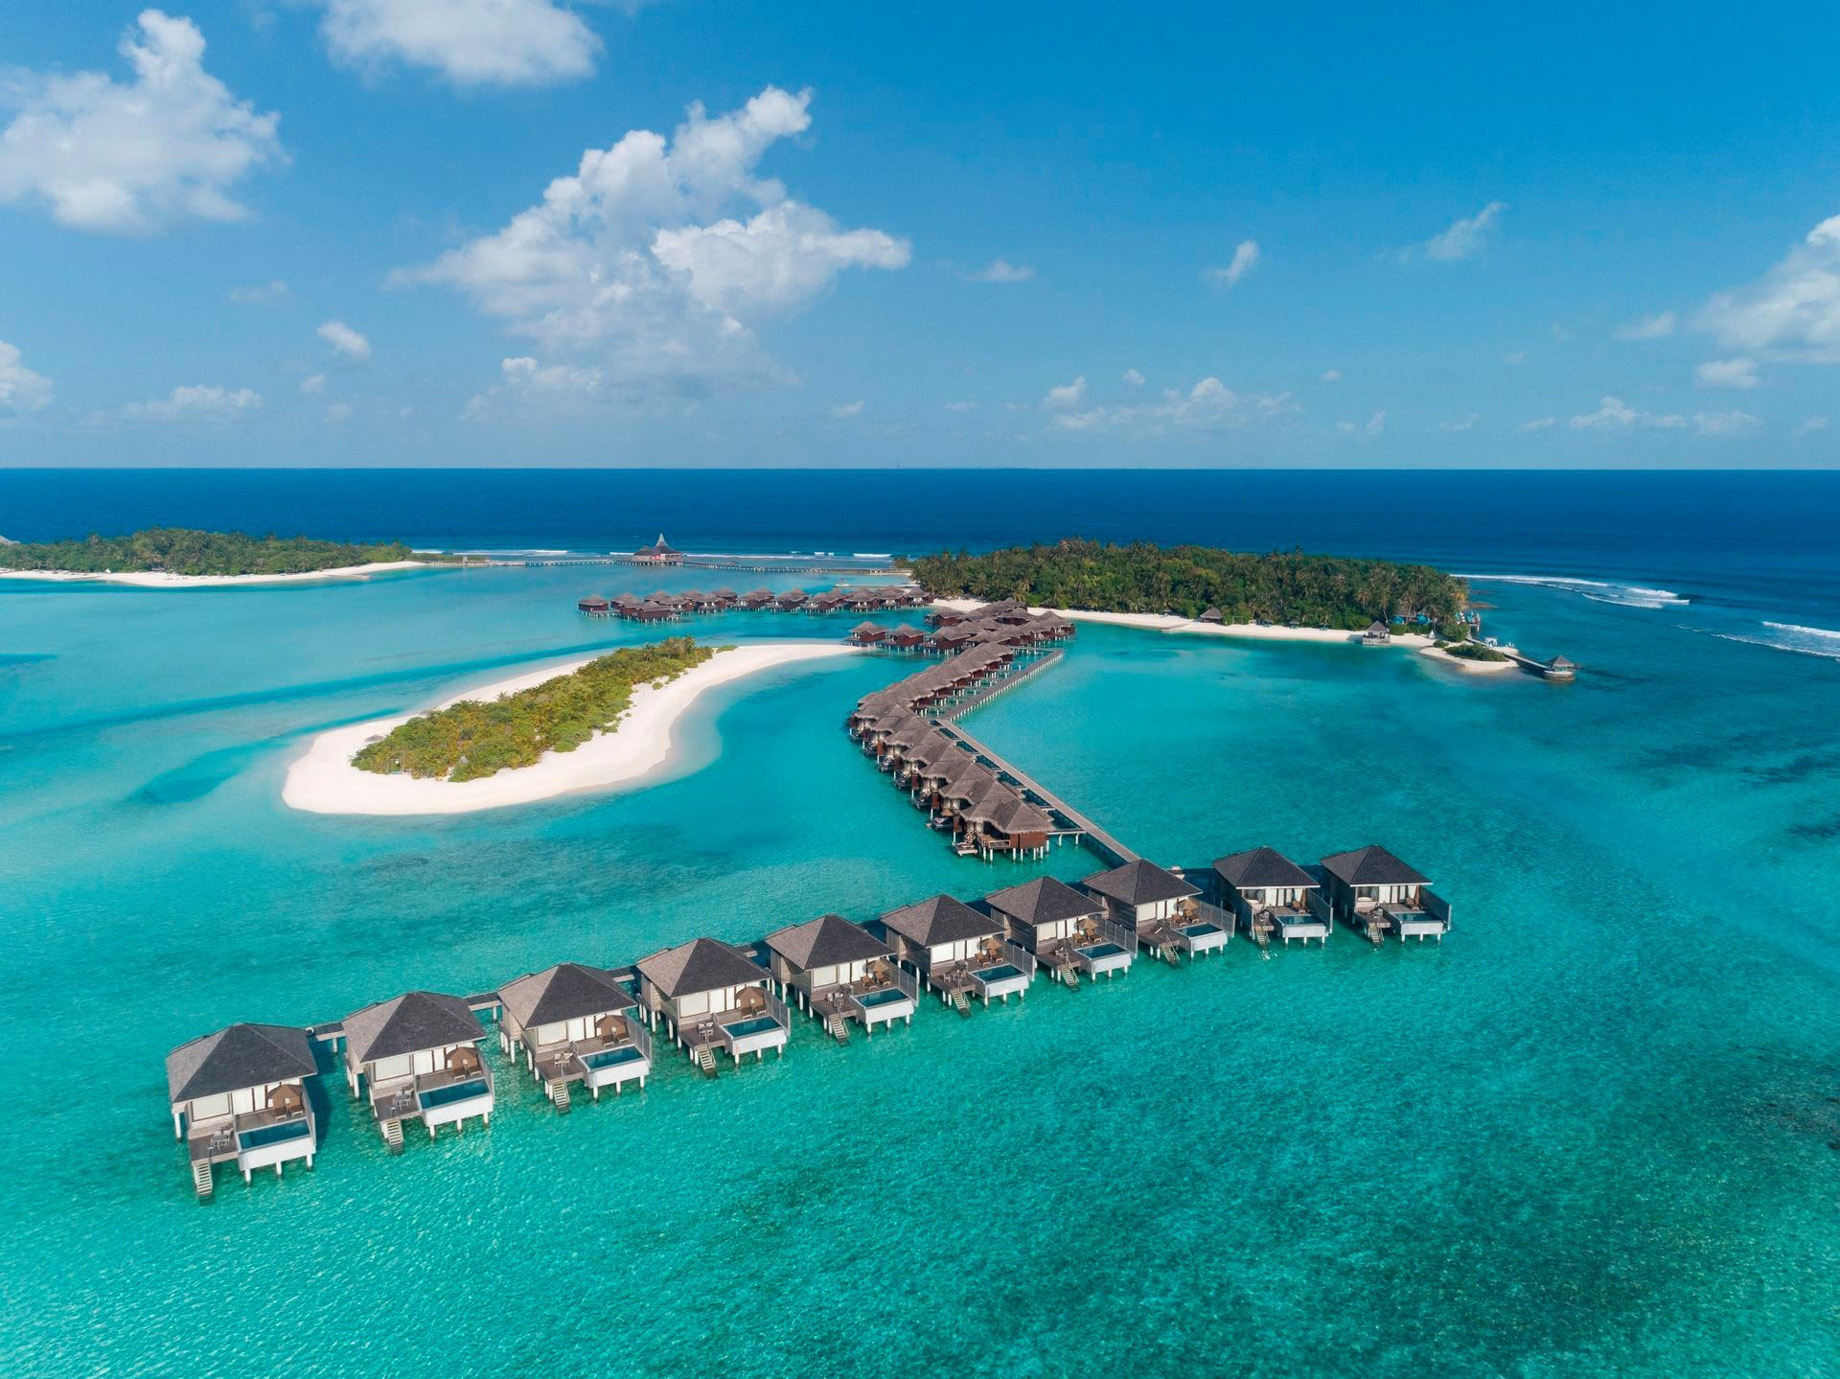 Anantara Veli Maldives Resort - South Male Atoll, Maldives - Aerial View